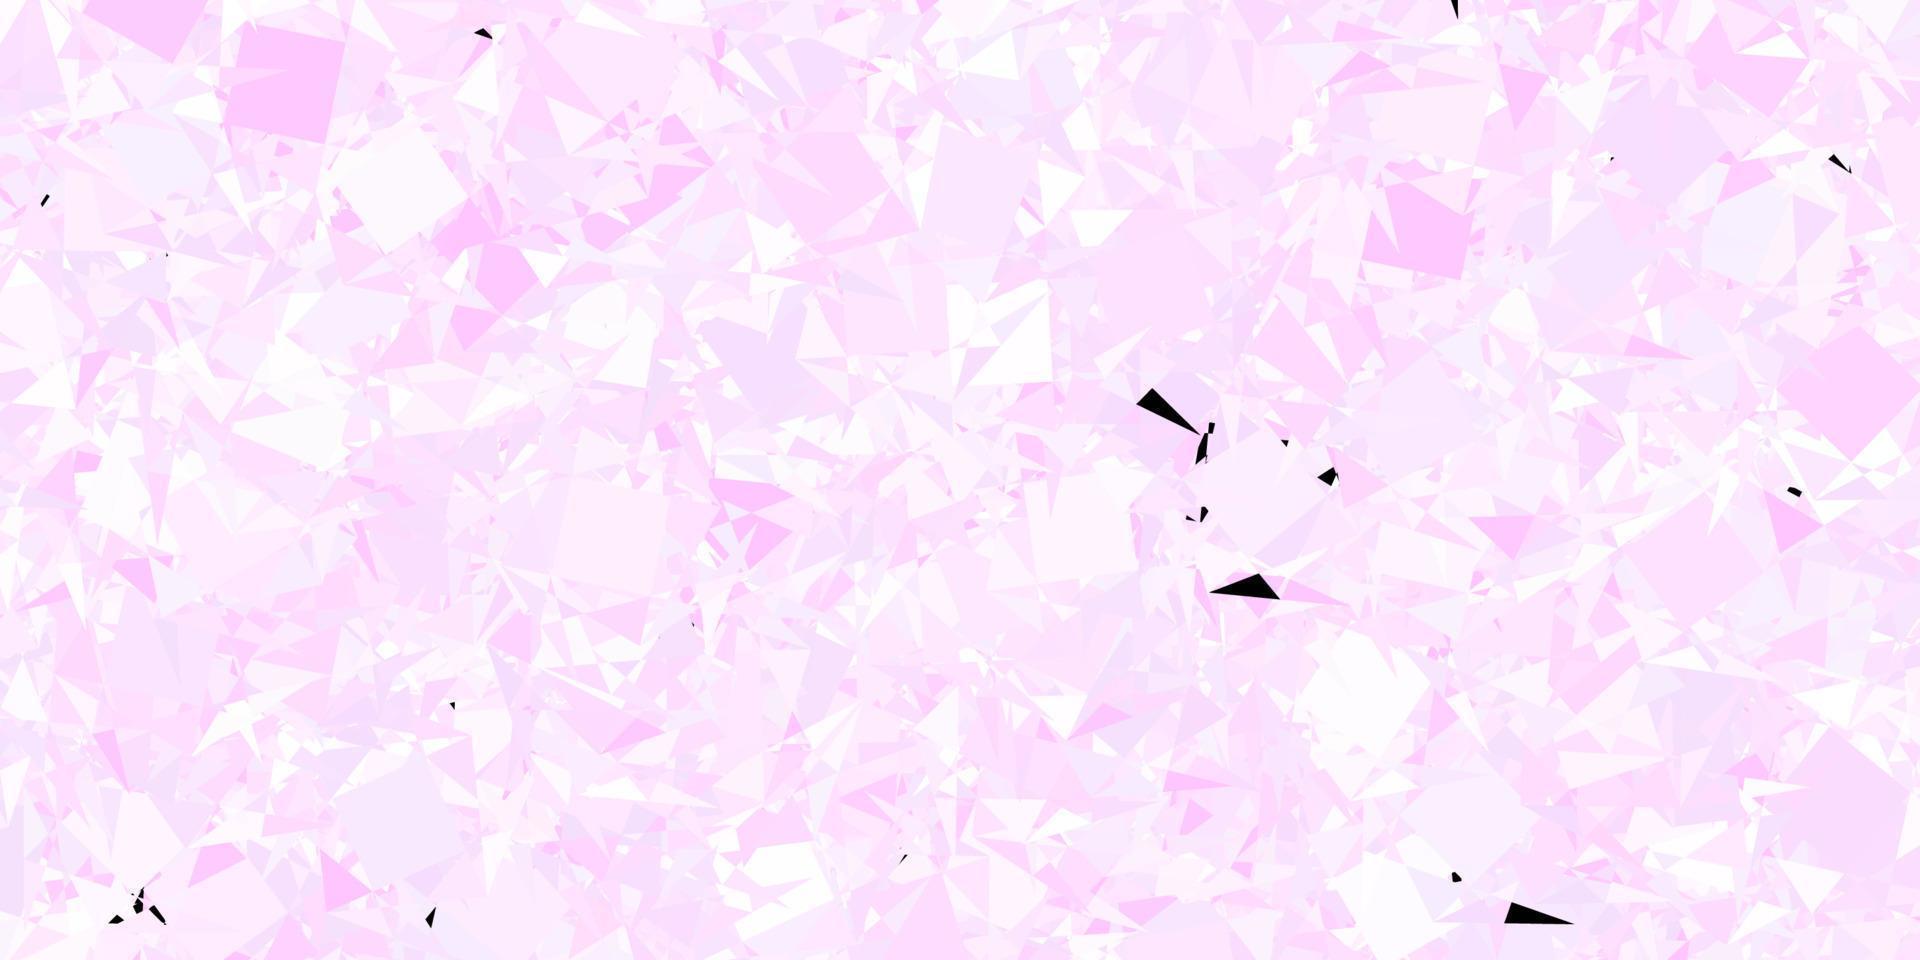 mörk lila vektor bakgrund med polygonala former.